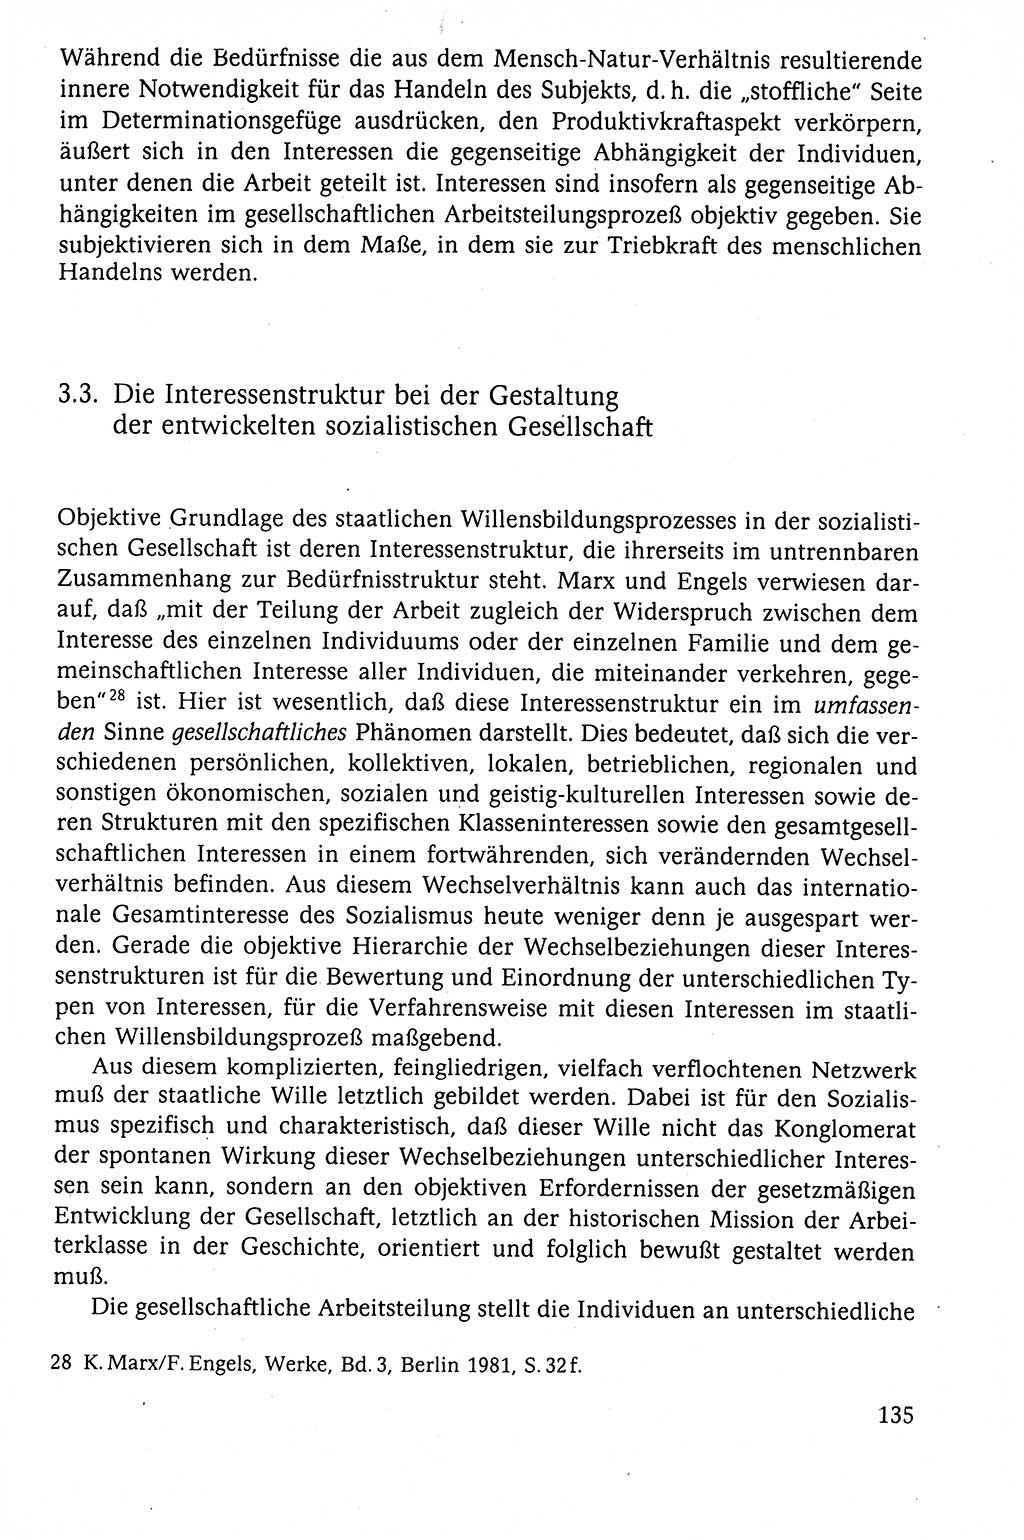 Der Staat im politischen System der DDR (Deutsche Demokratische Republik) 1986, Seite 135 (St. pol. Sys. DDR 1986, S. 135)